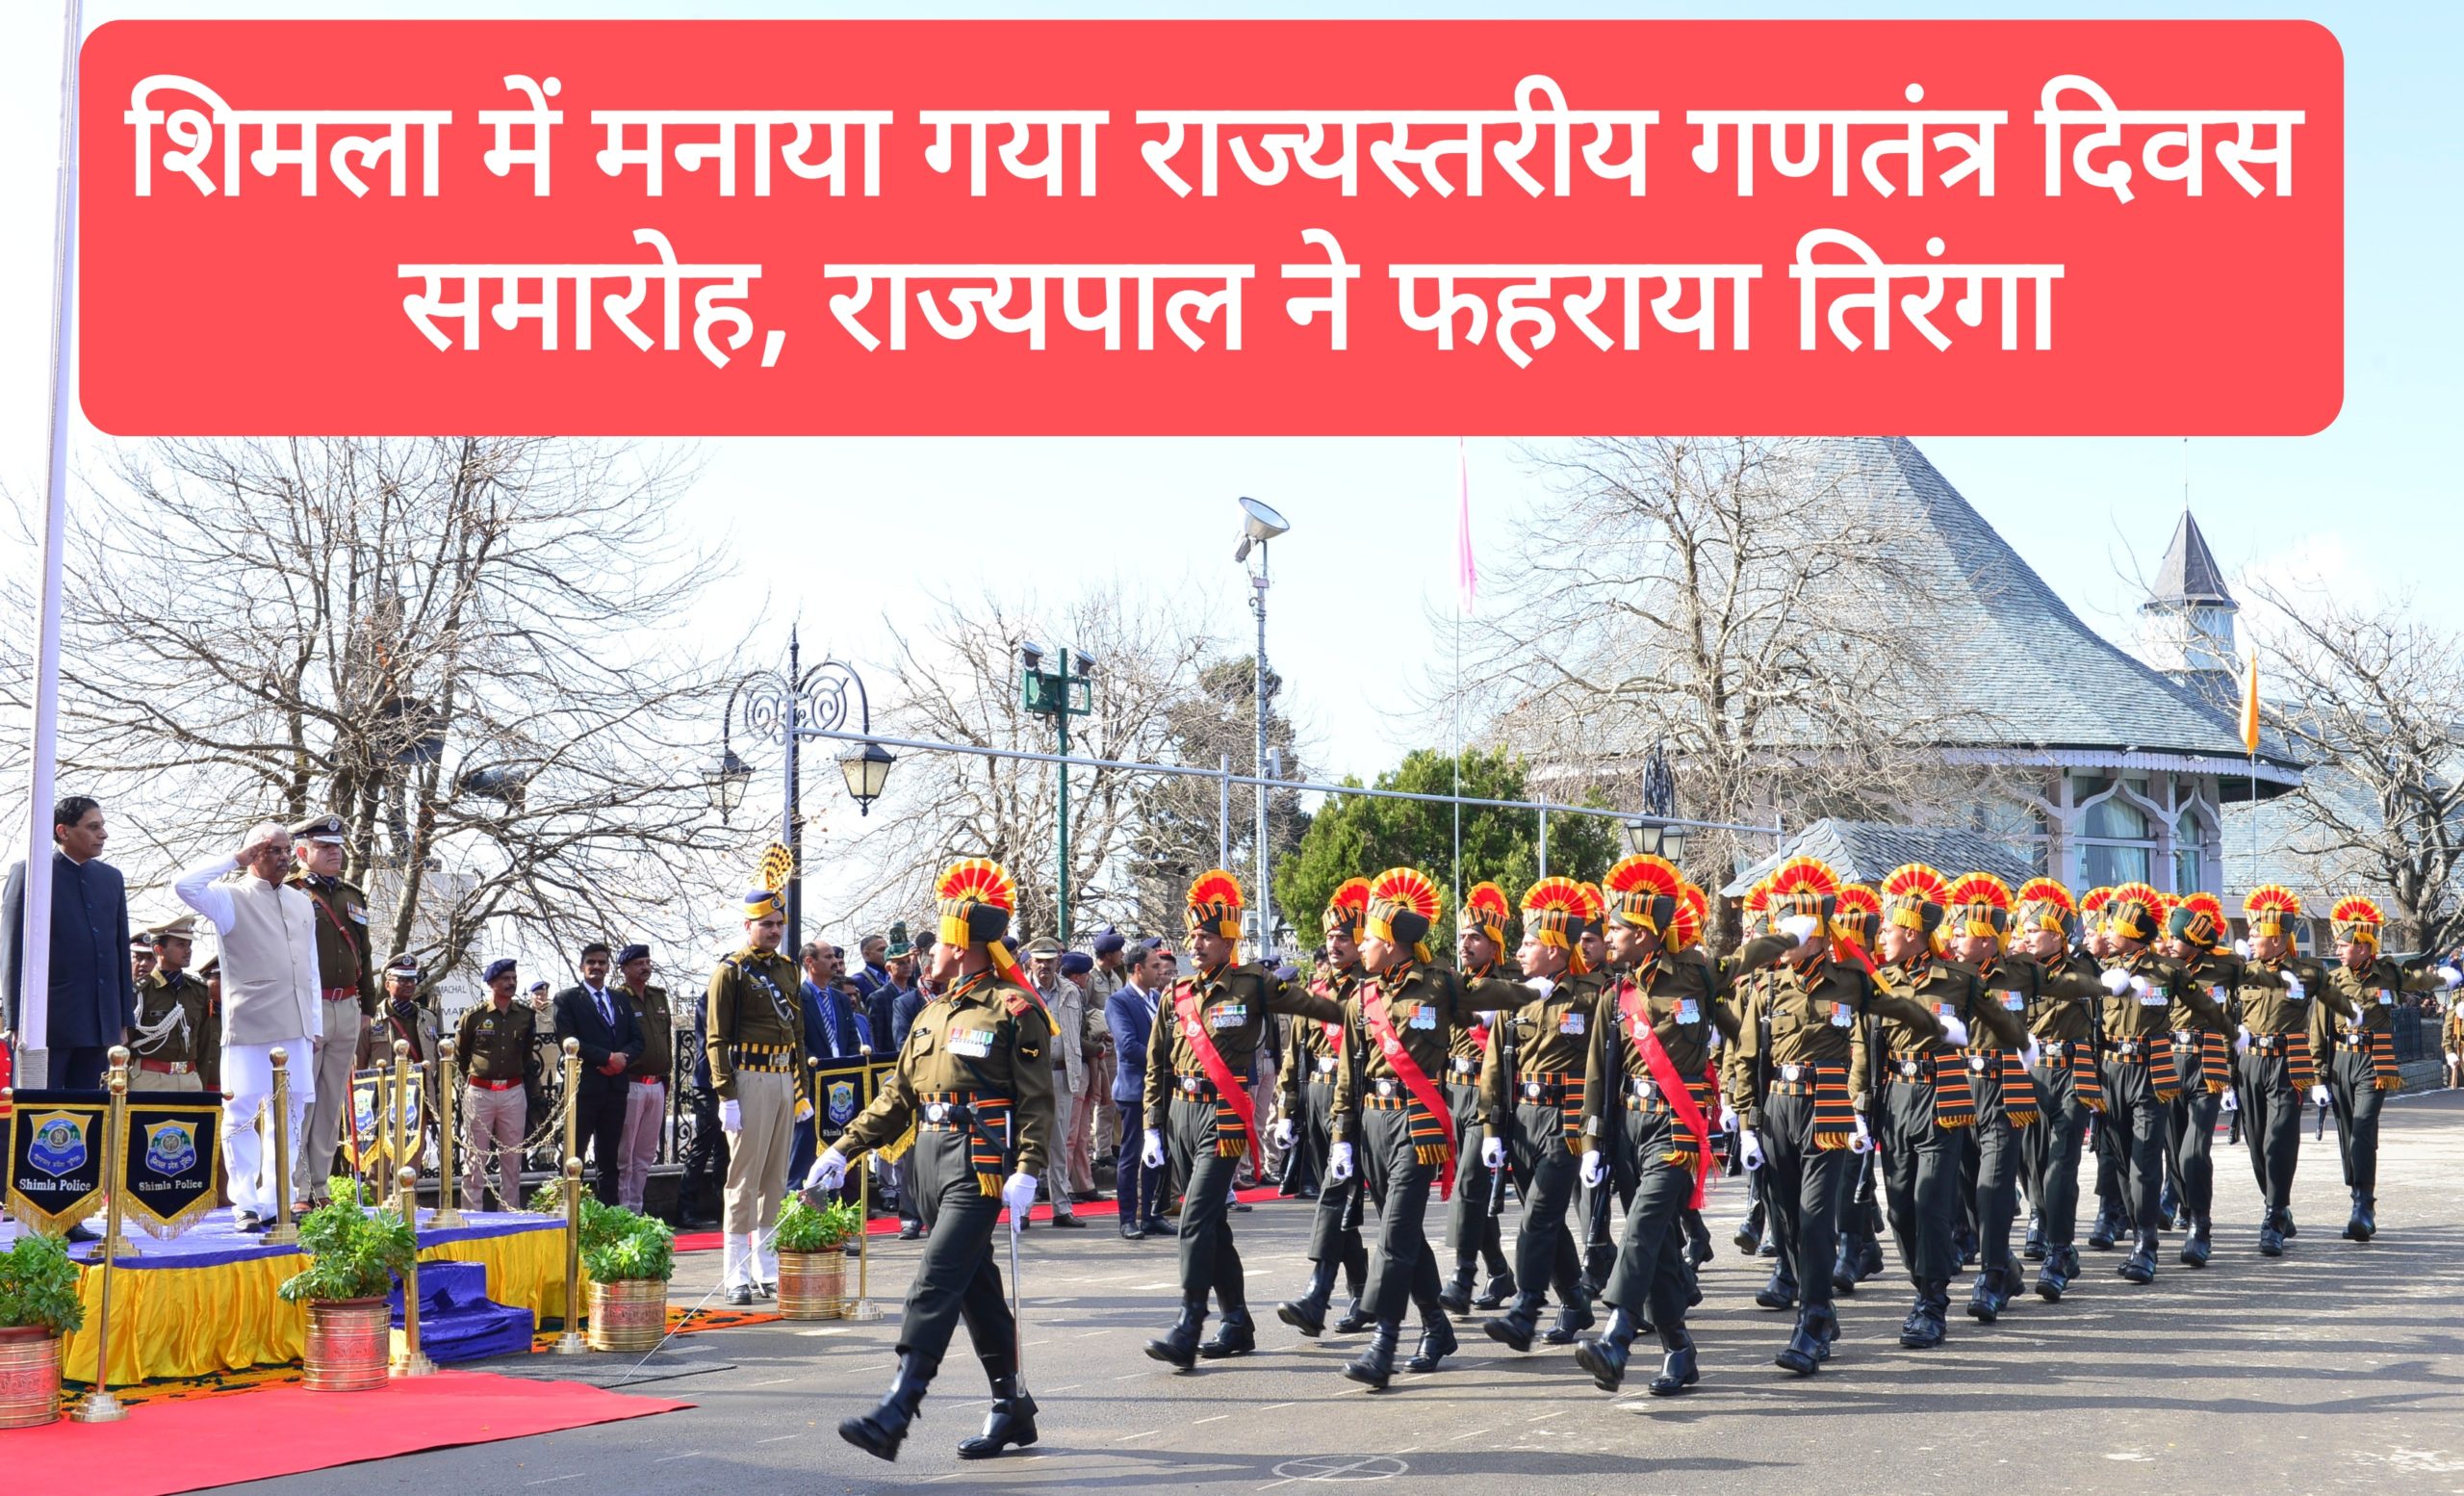 शिमला में मनाया गया राज्यस्तरीय गणतंत्र दिवस समारोह, राज्यपाल ने फहराया तिरंगा, परेड में शामिल हुई 25 टुकड़ियां